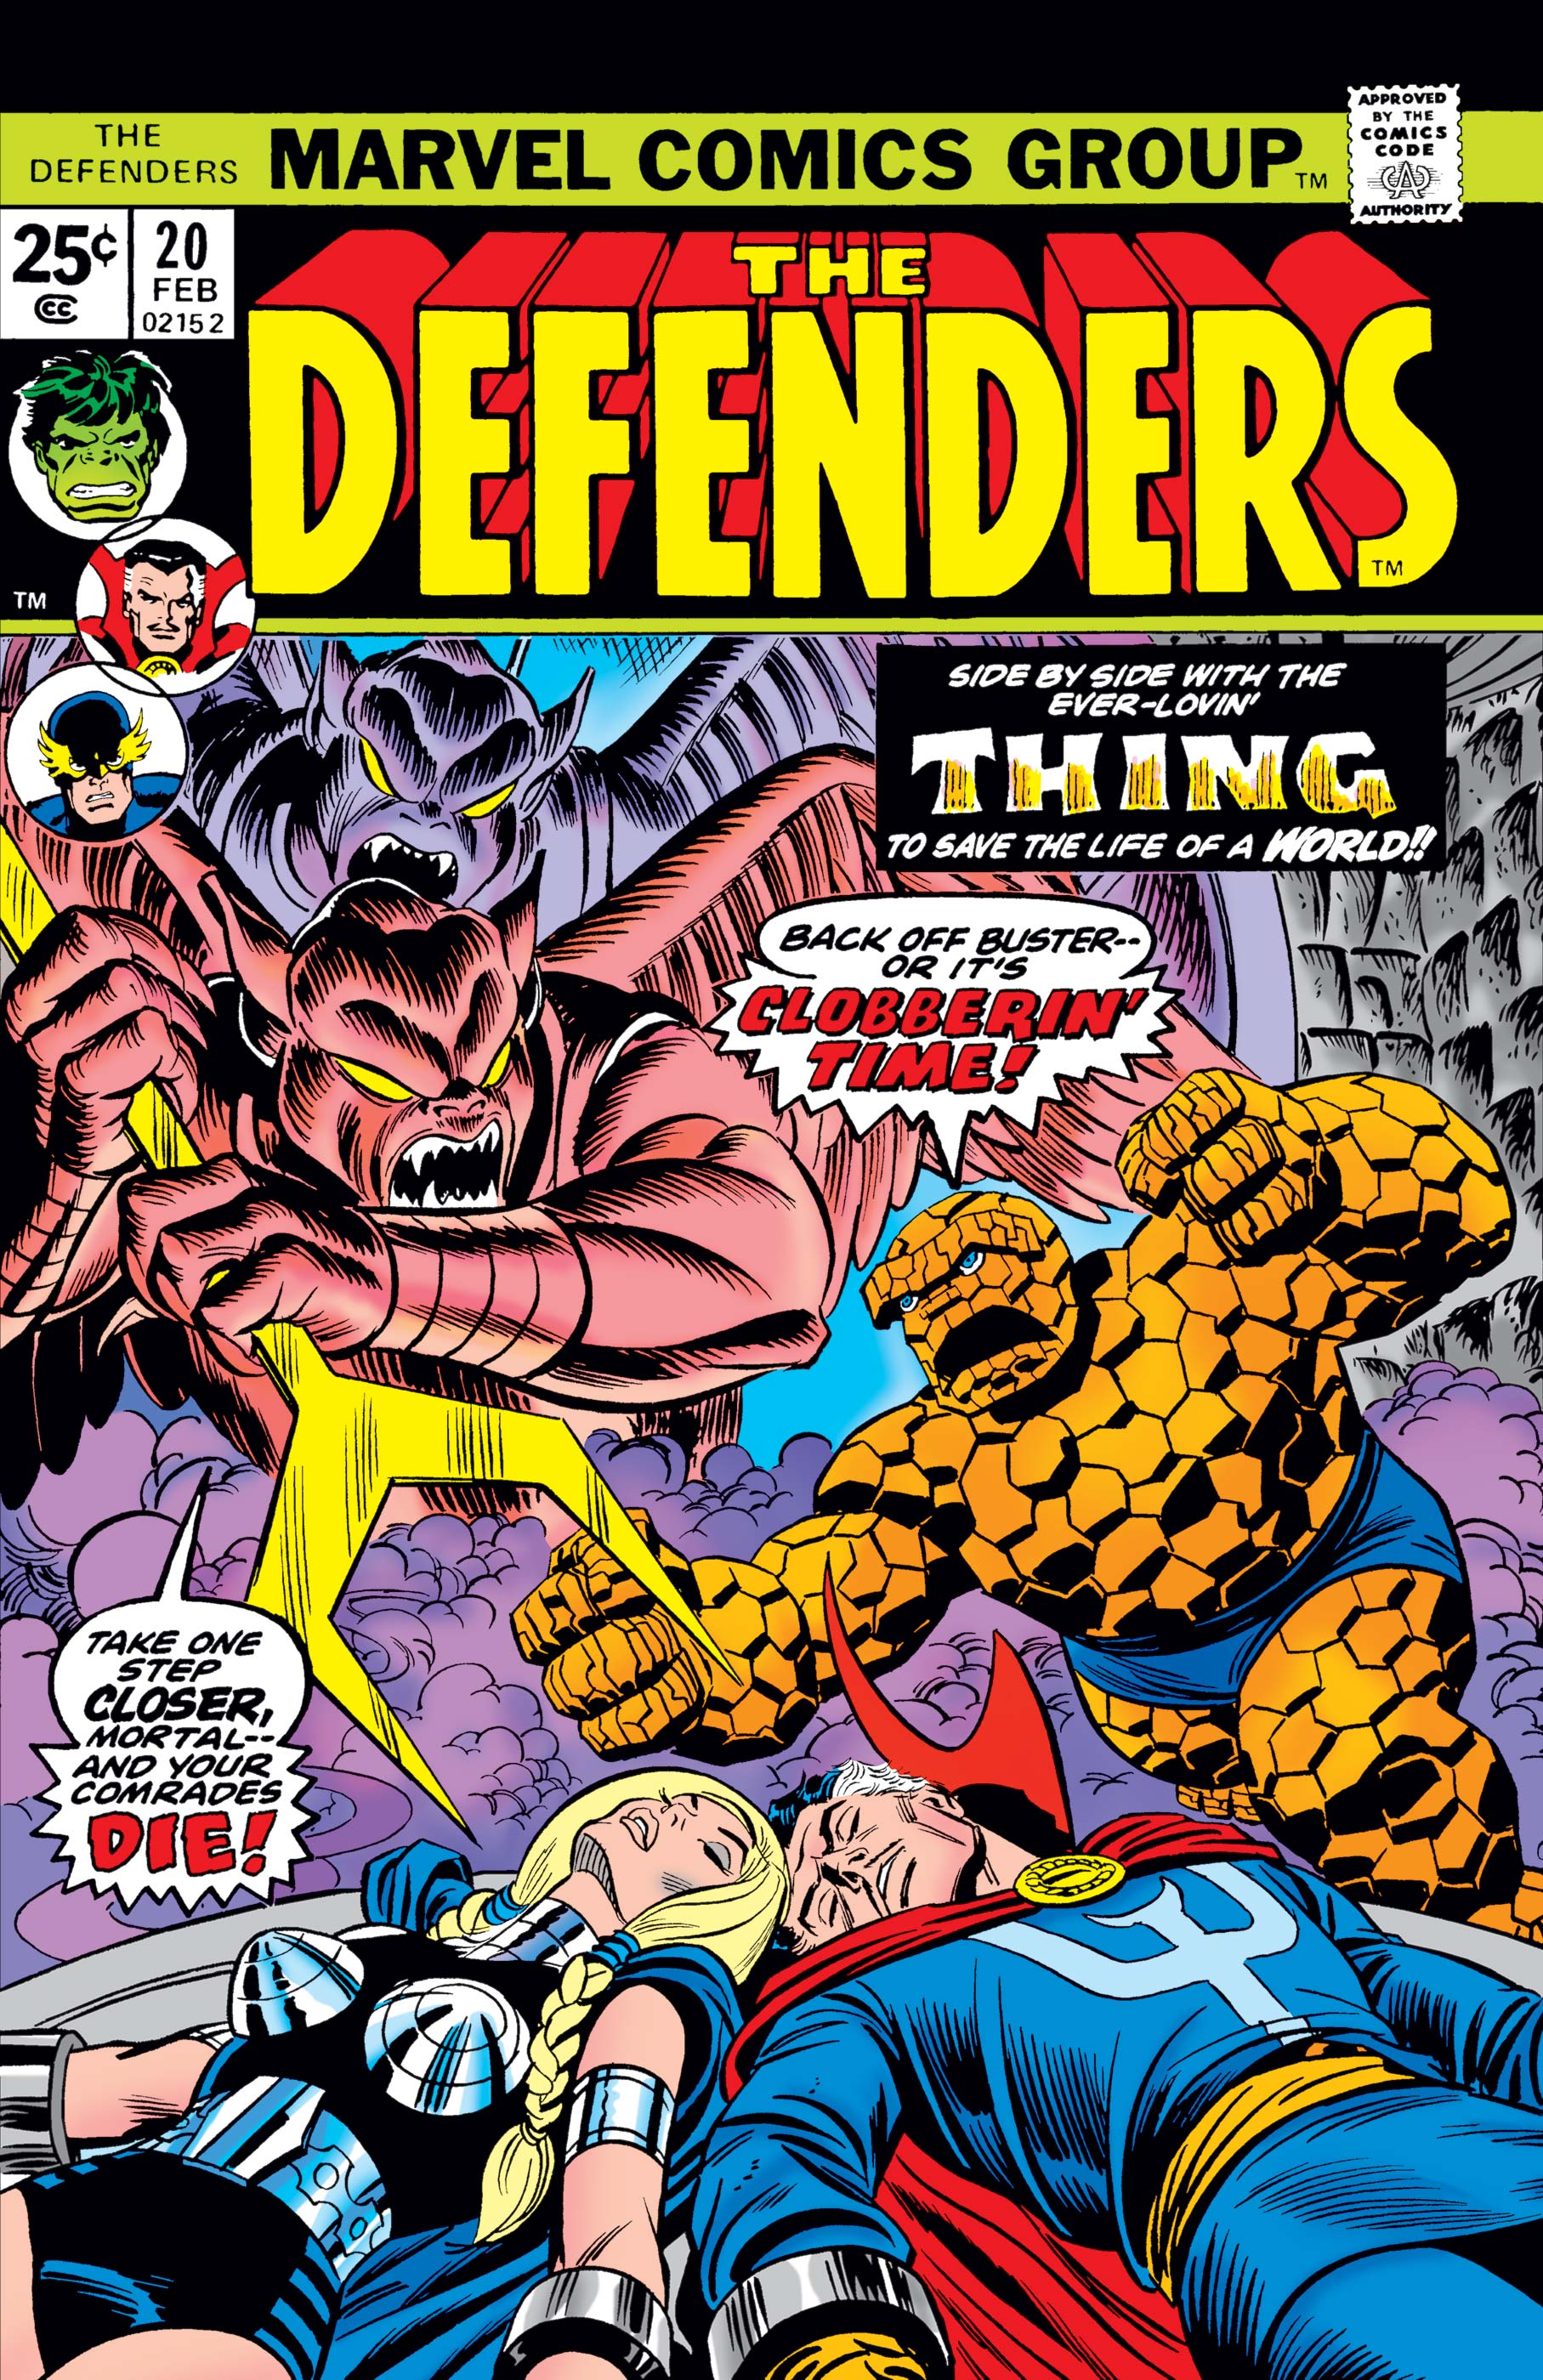 Defenders (1972) #20